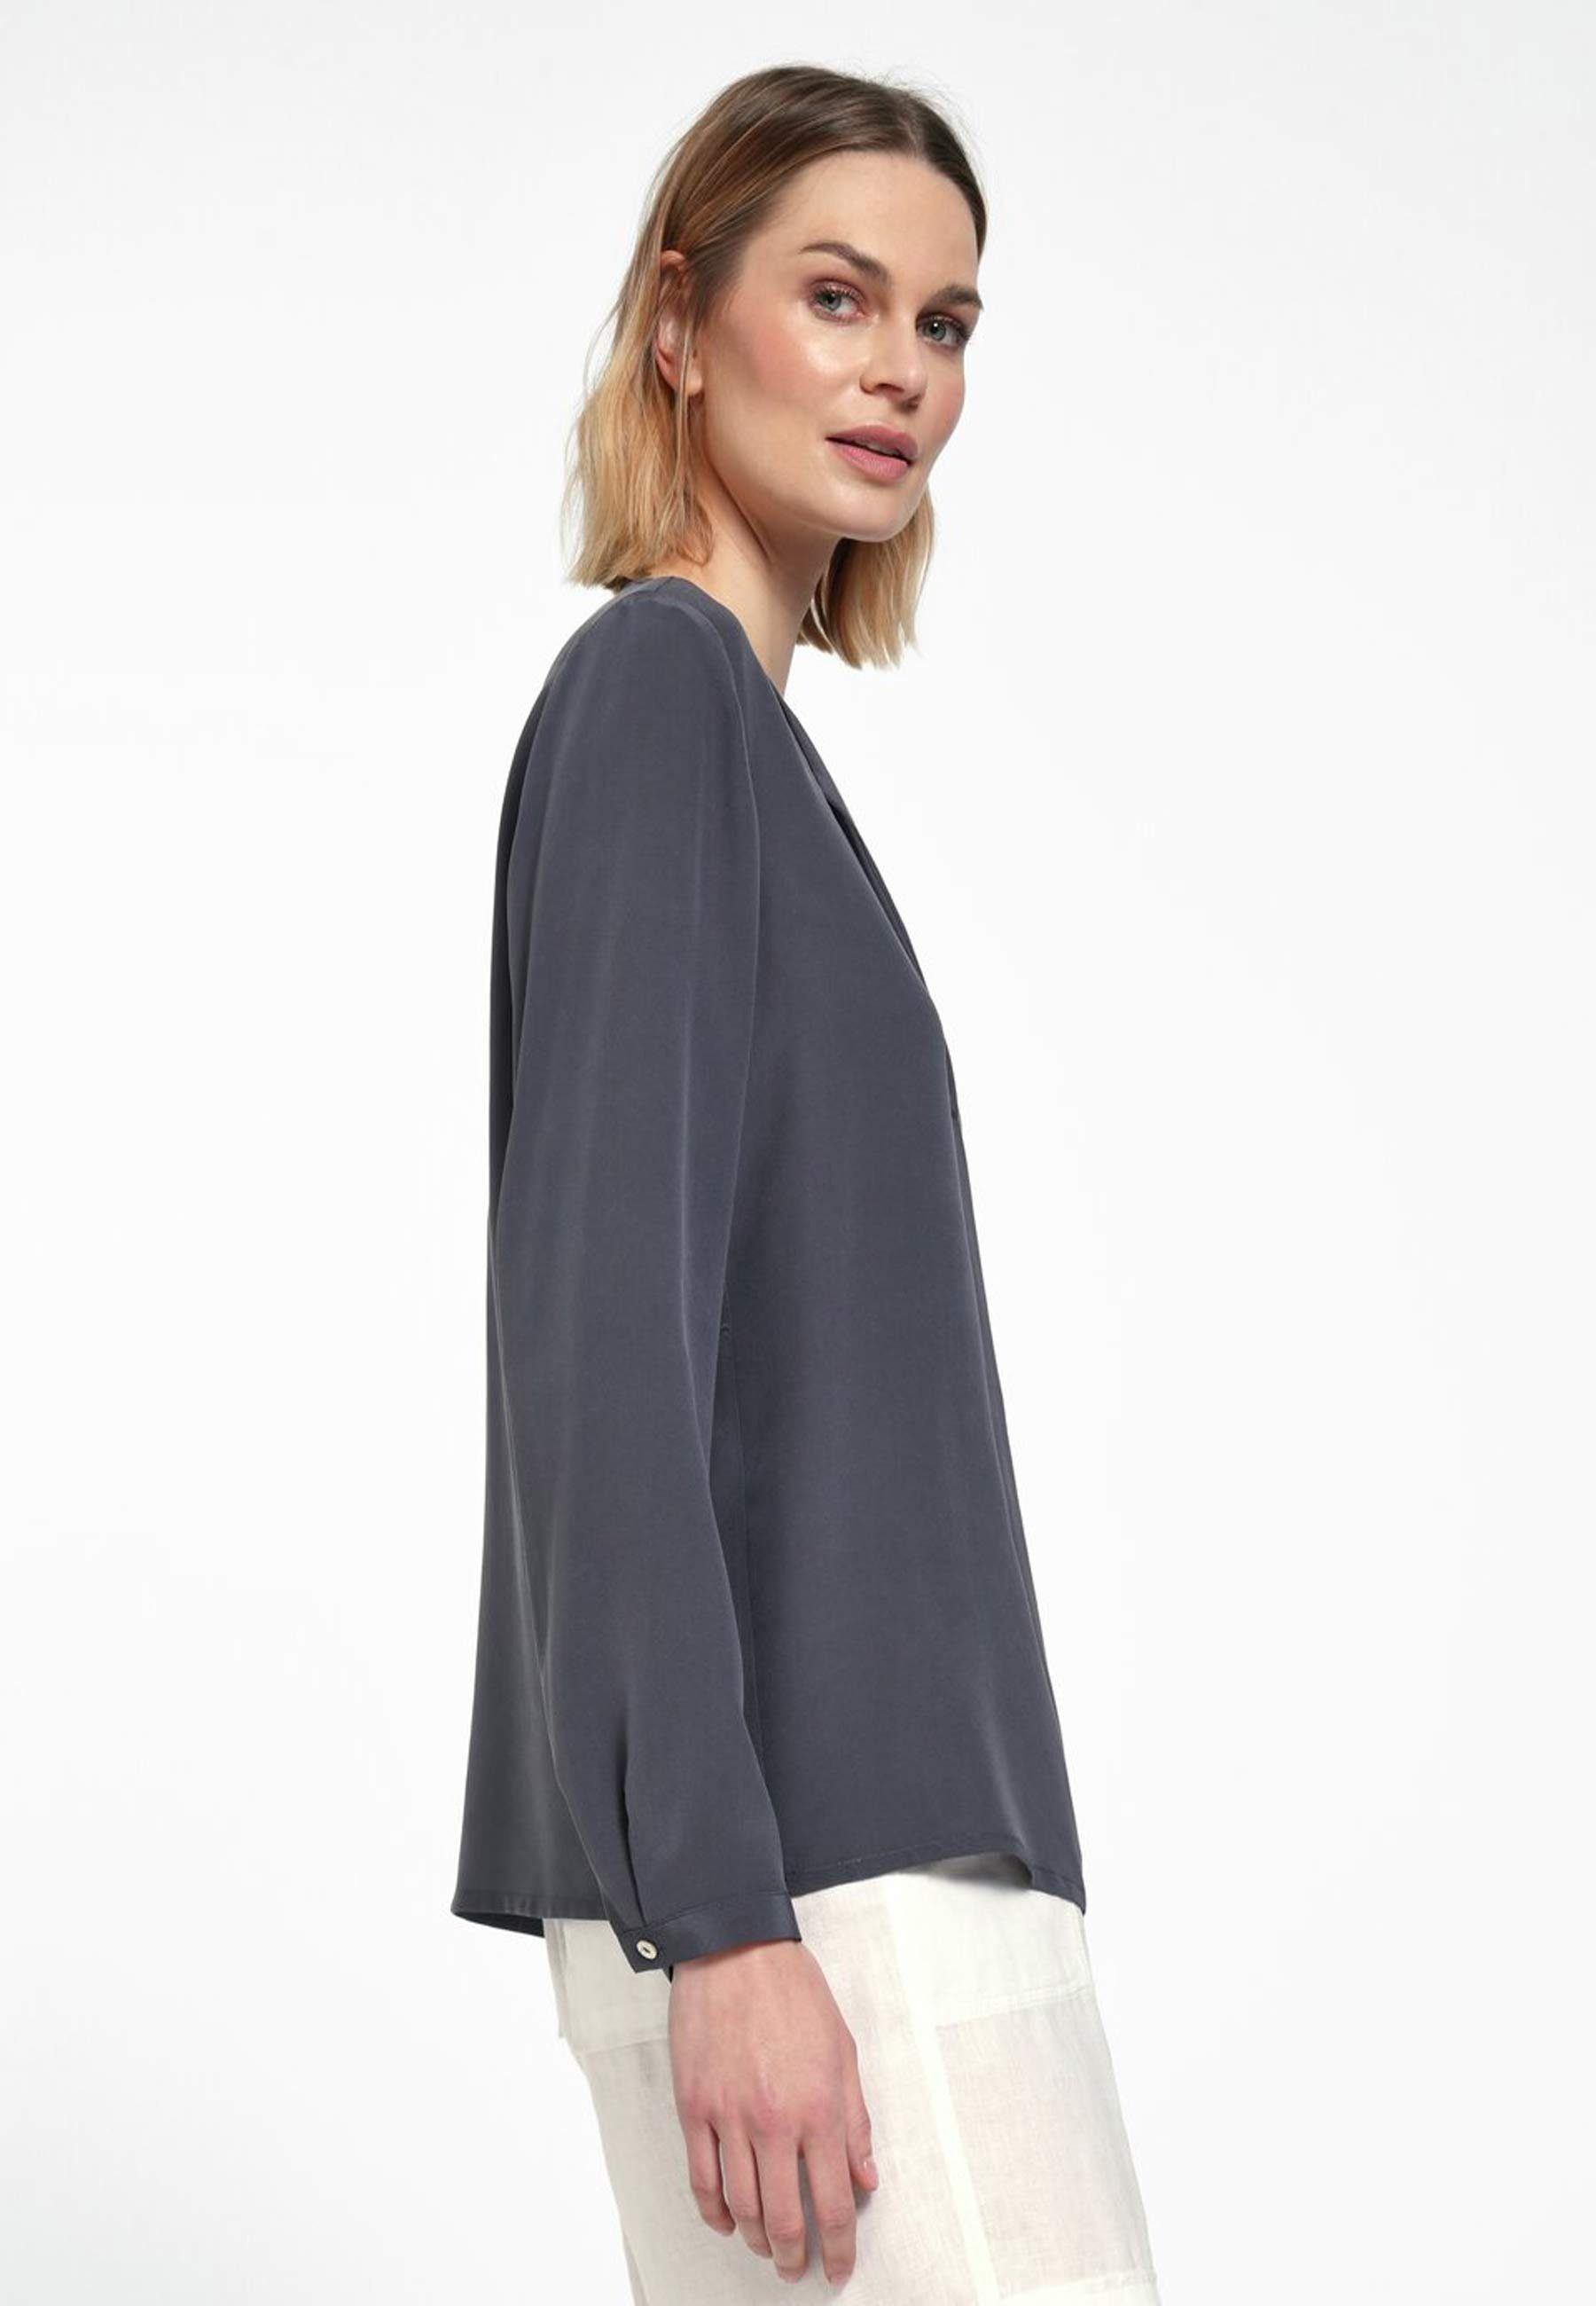 Design Bluse include Klassische mit GRAPHIT klassischem Silk